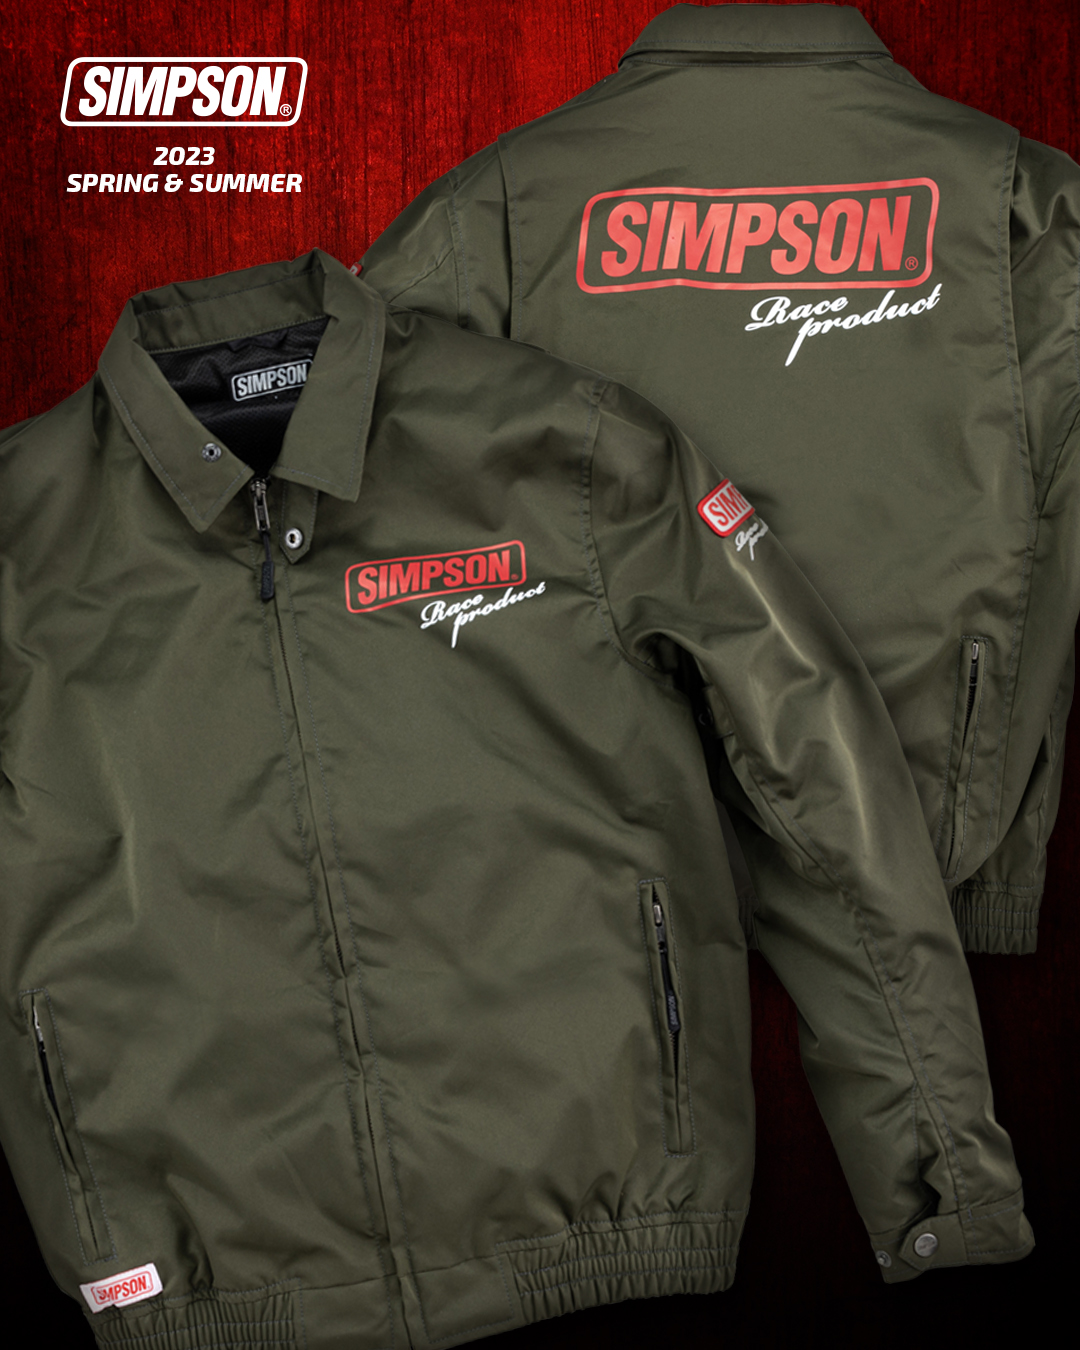 セール品 シンプソンジャケット 春夏モデル NSM-C07 Simpson 2023SS 